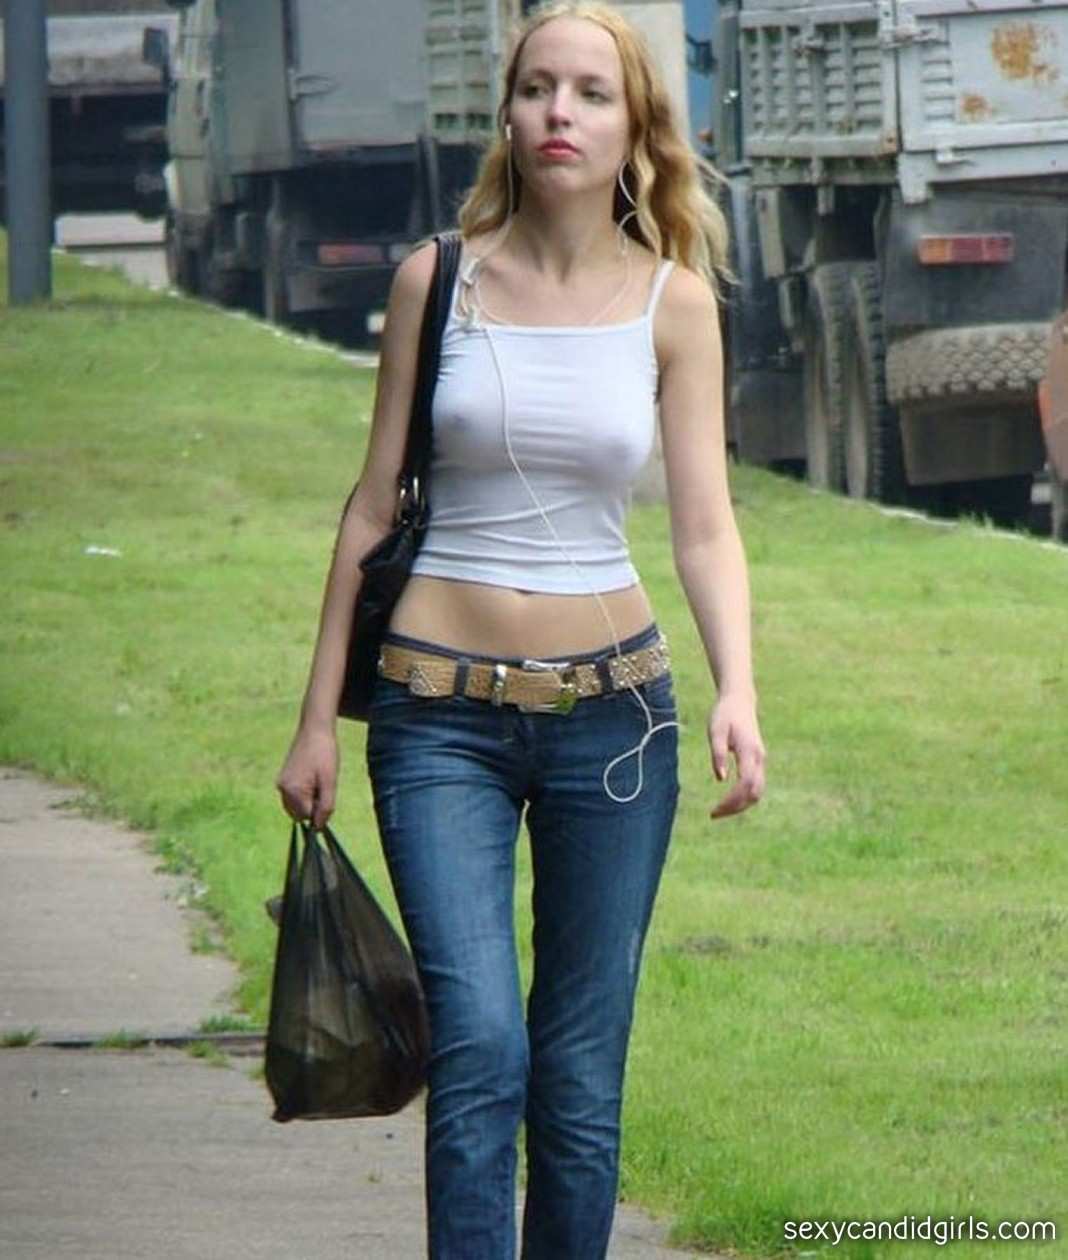 Молодая подруга открыла грудь на улице фото